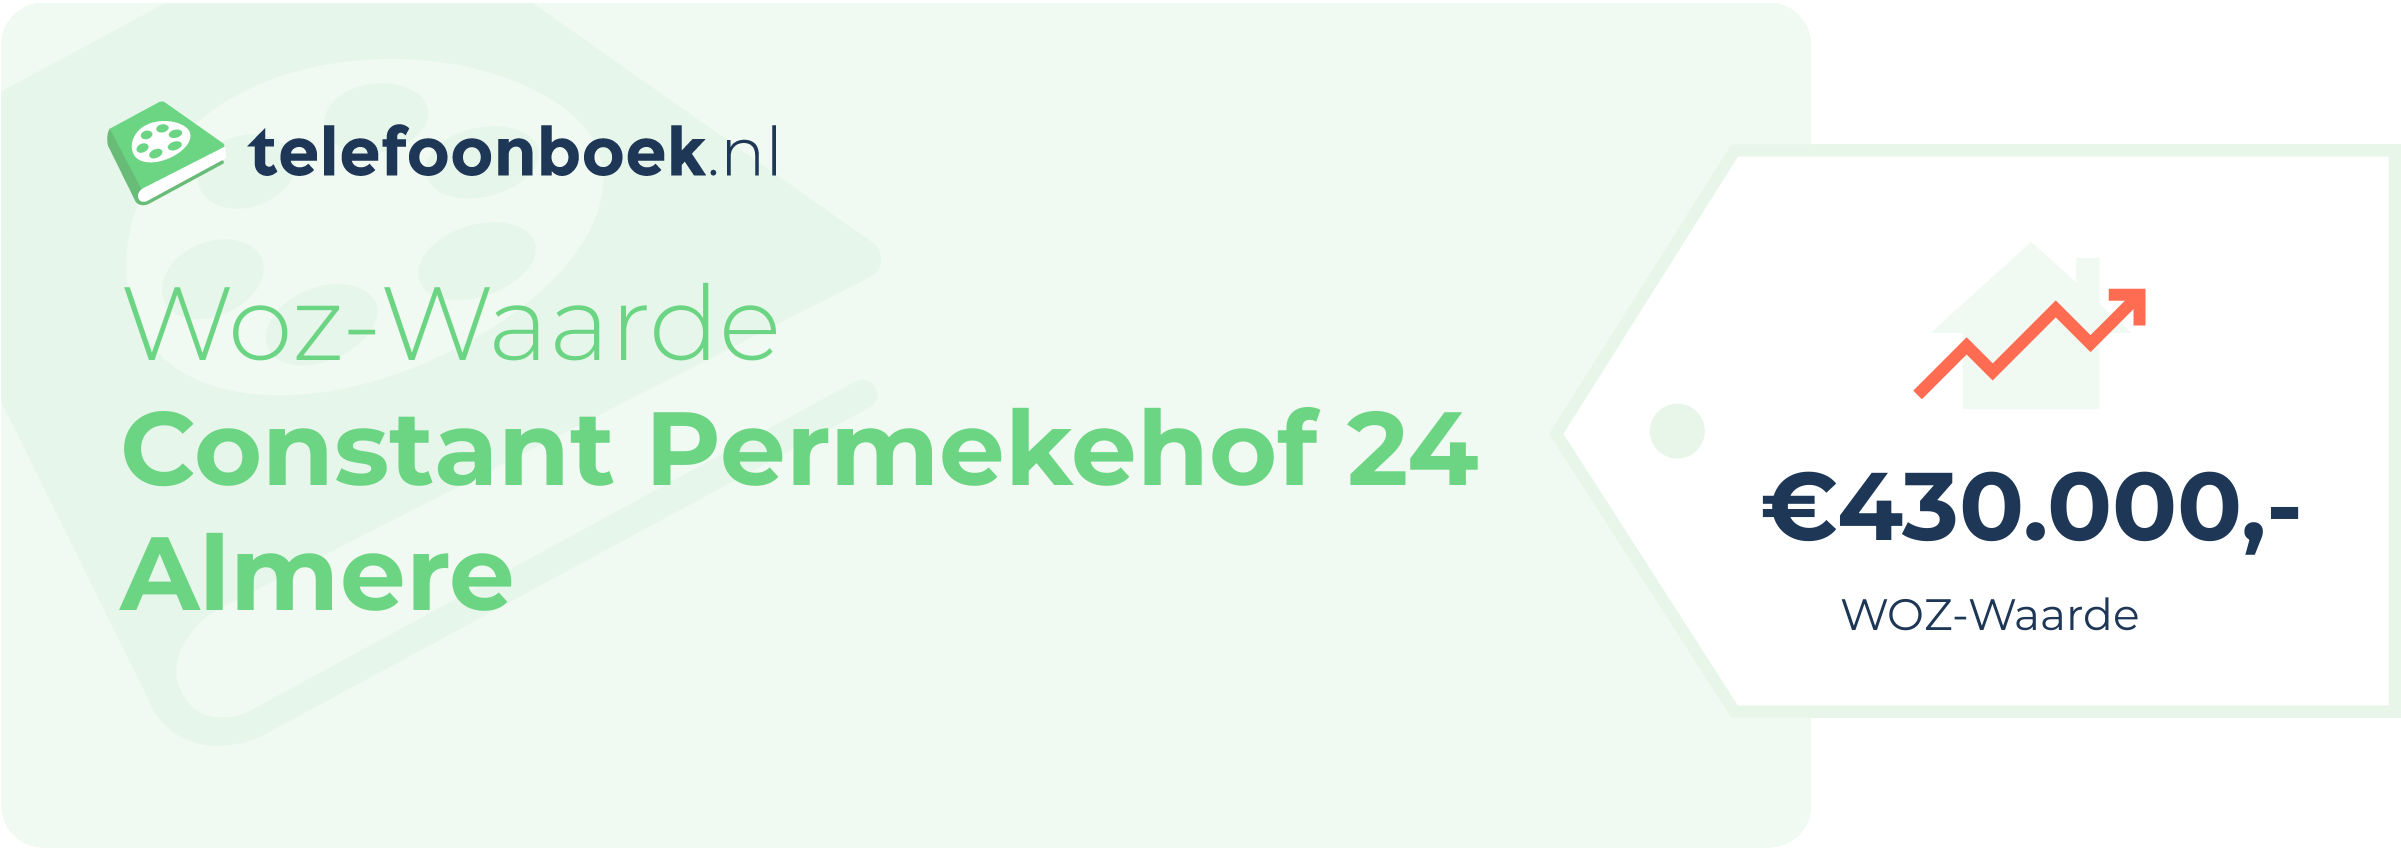 WOZ-waarde Constant Permekehof 24 Almere